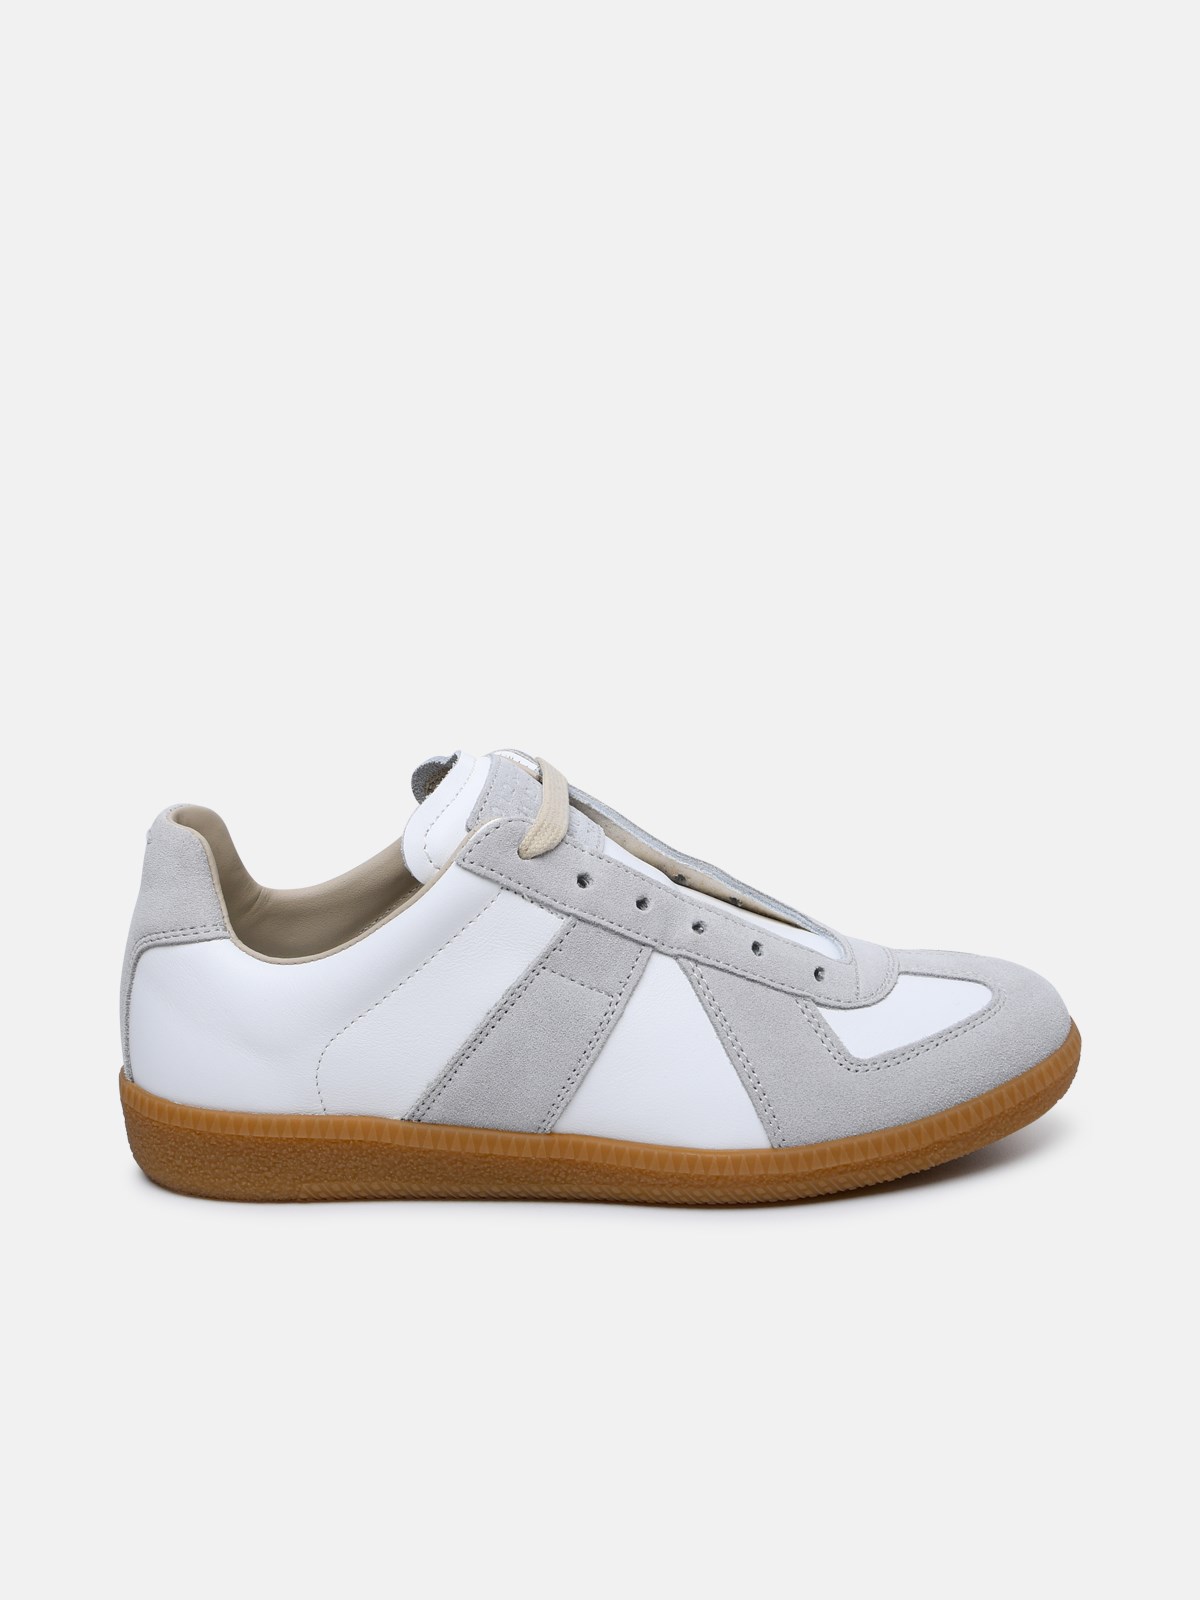 Maison Margiela Leather Replica Sneaker In White